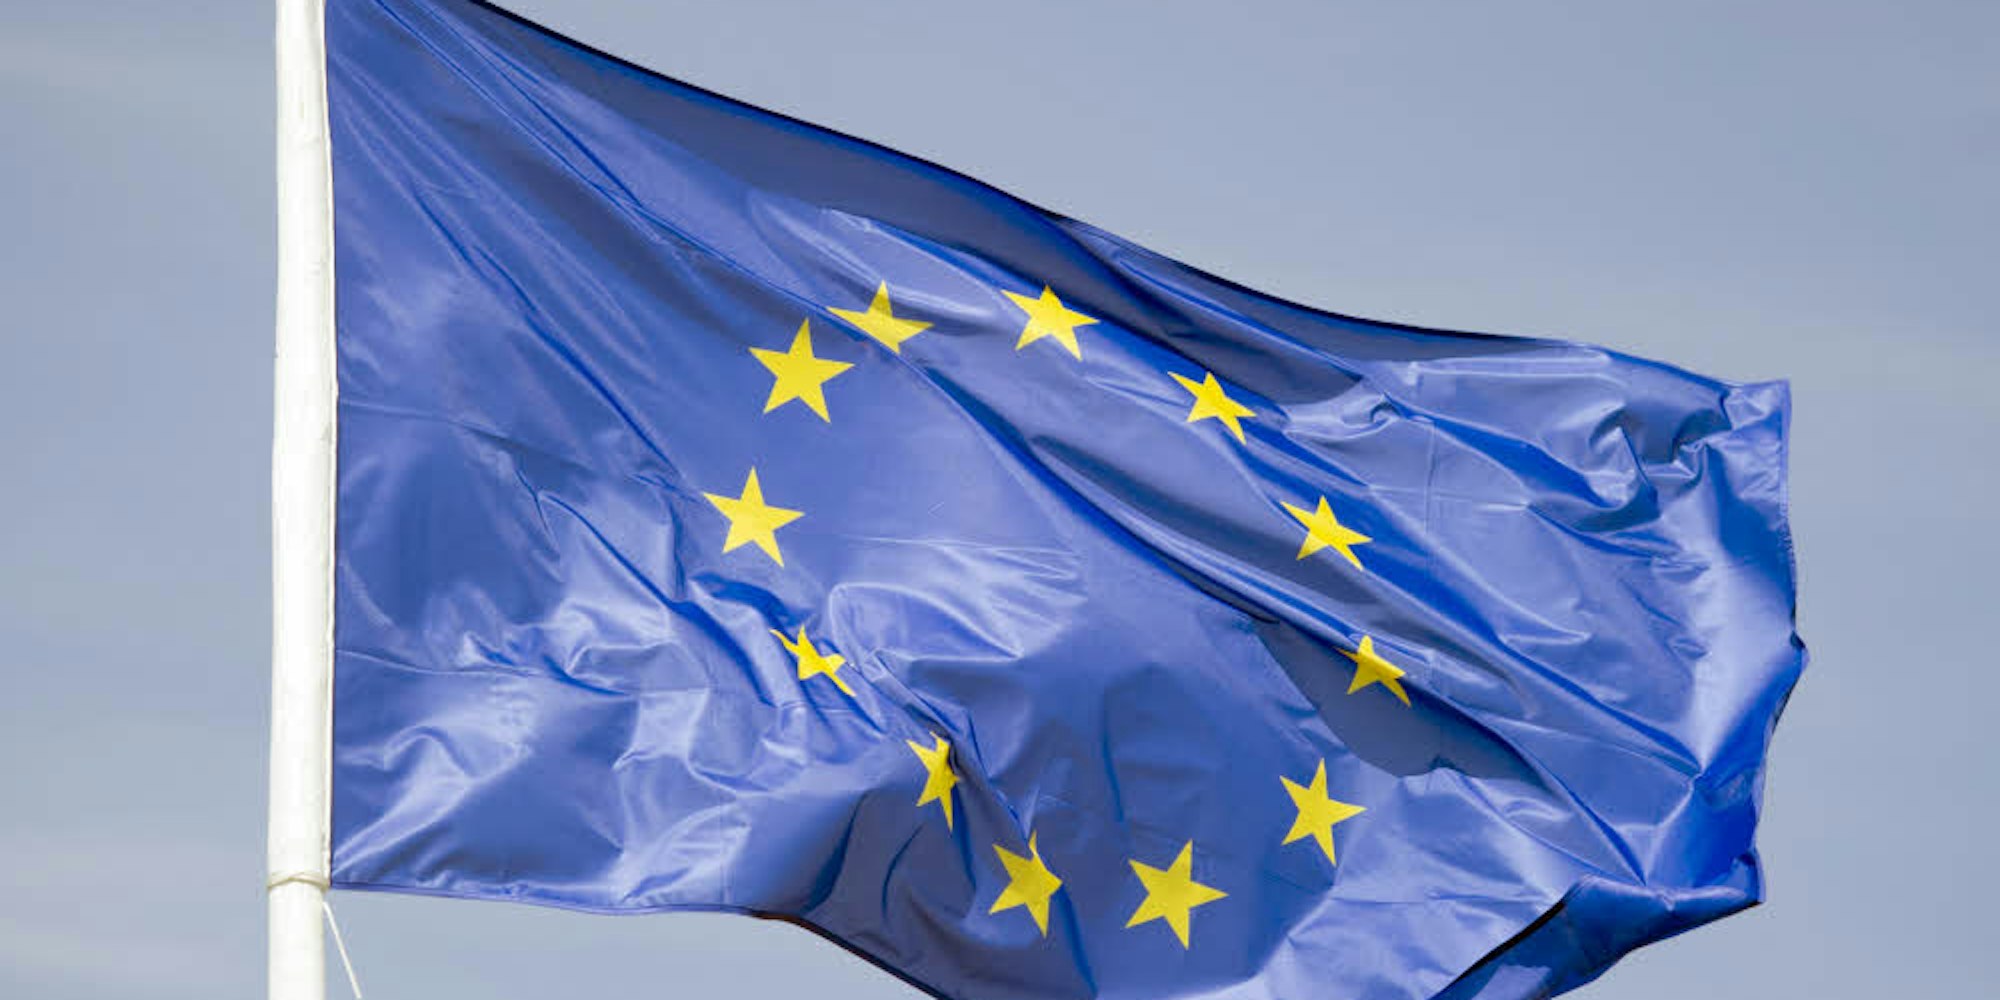 Nehmen junge Leute die Errungenschaften der Europäischen Union als selbstverständlich wahr?